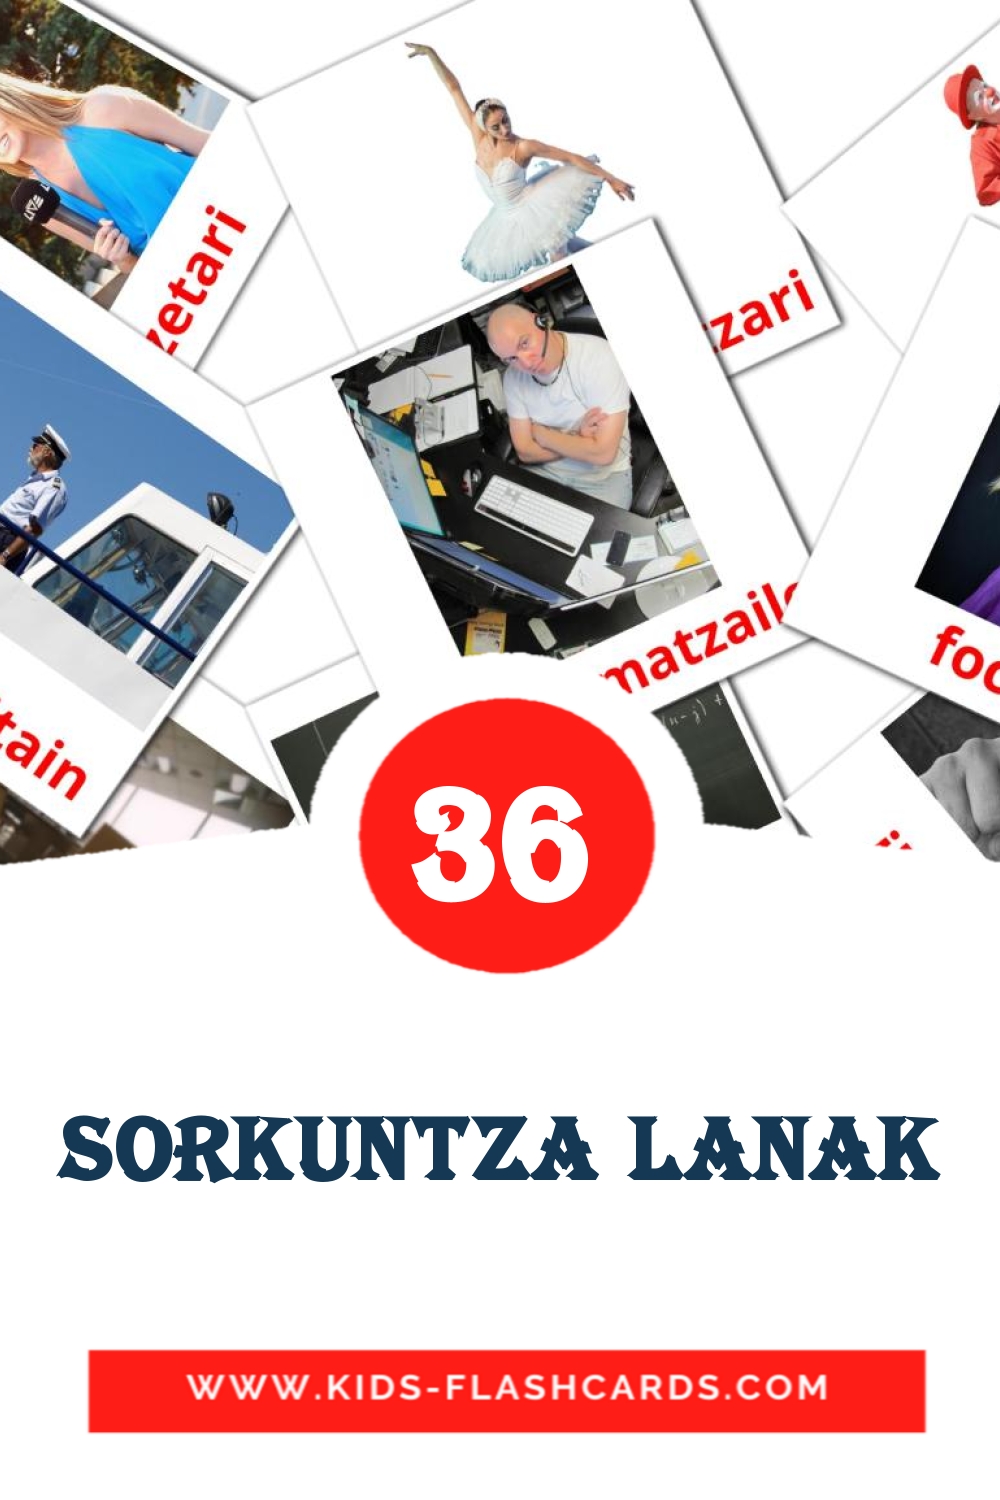 36 tarjetas didacticas de sorkuntza lanak para el jardín de infancia en euskera